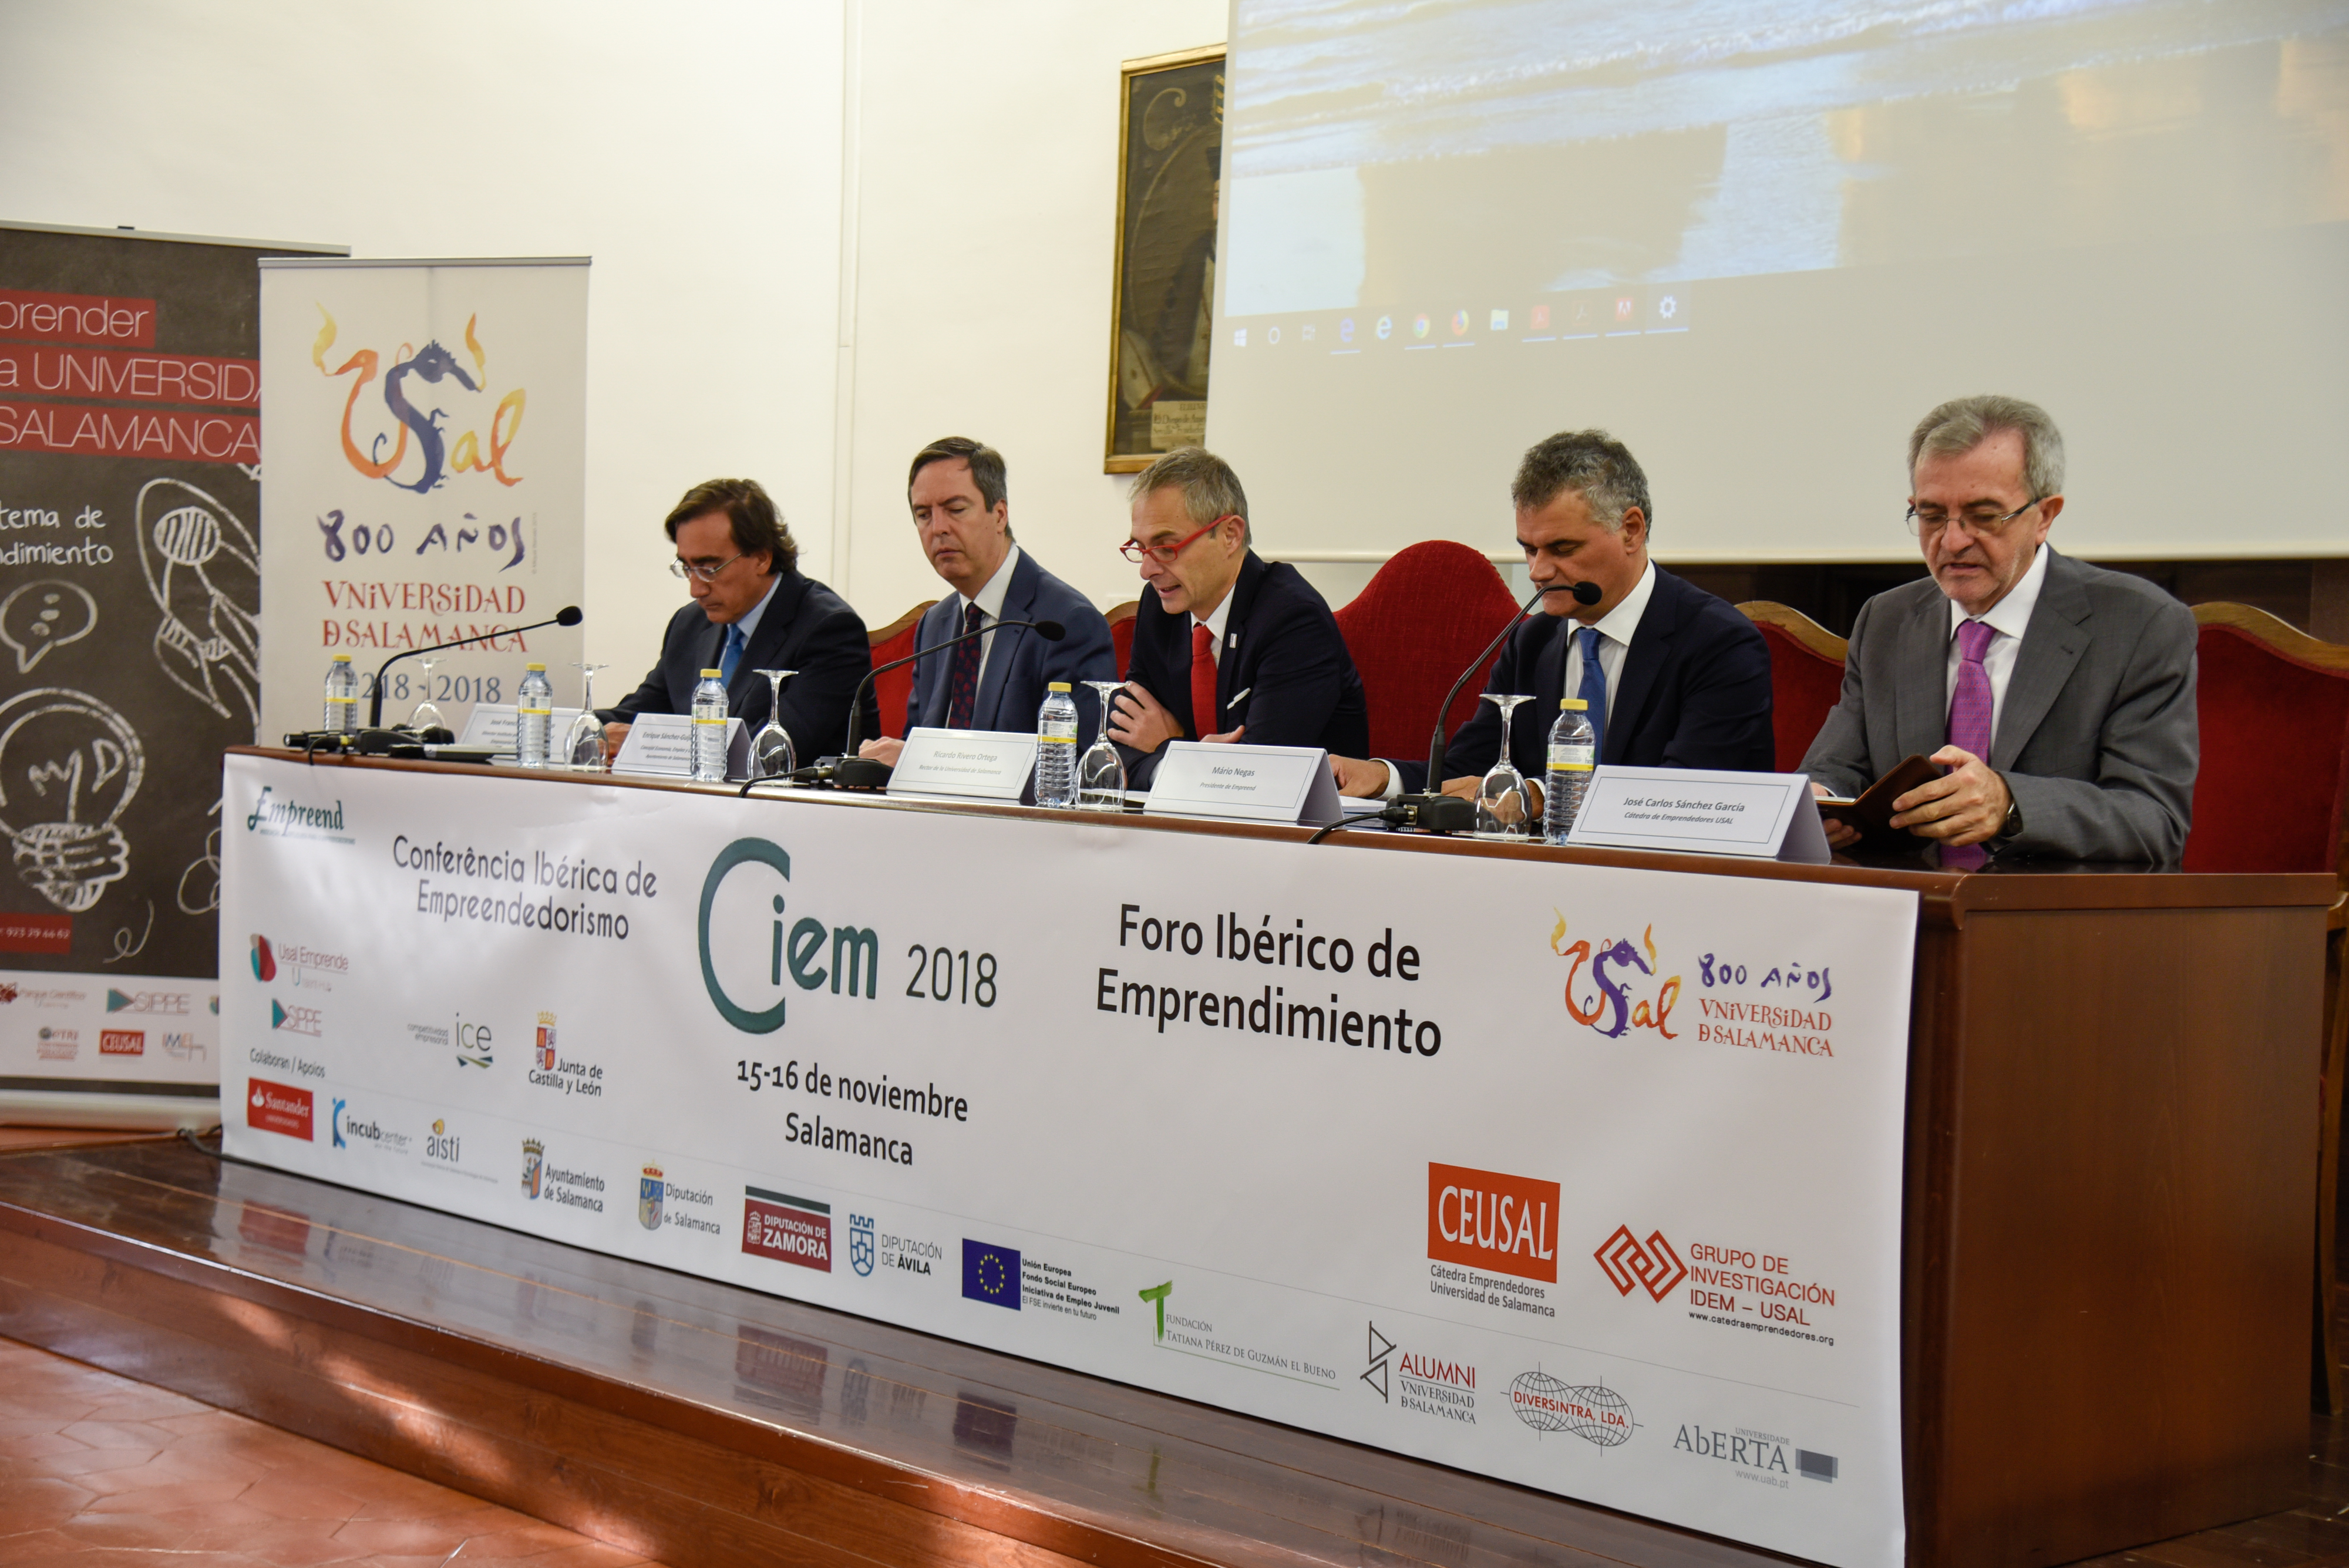 La Universidad de Salamanca acoge el Foro Ibérico de Emprendimiento, la VIII Conferencia Ibérica de Emprendimiento y la II Jornadas de Emprendimiento